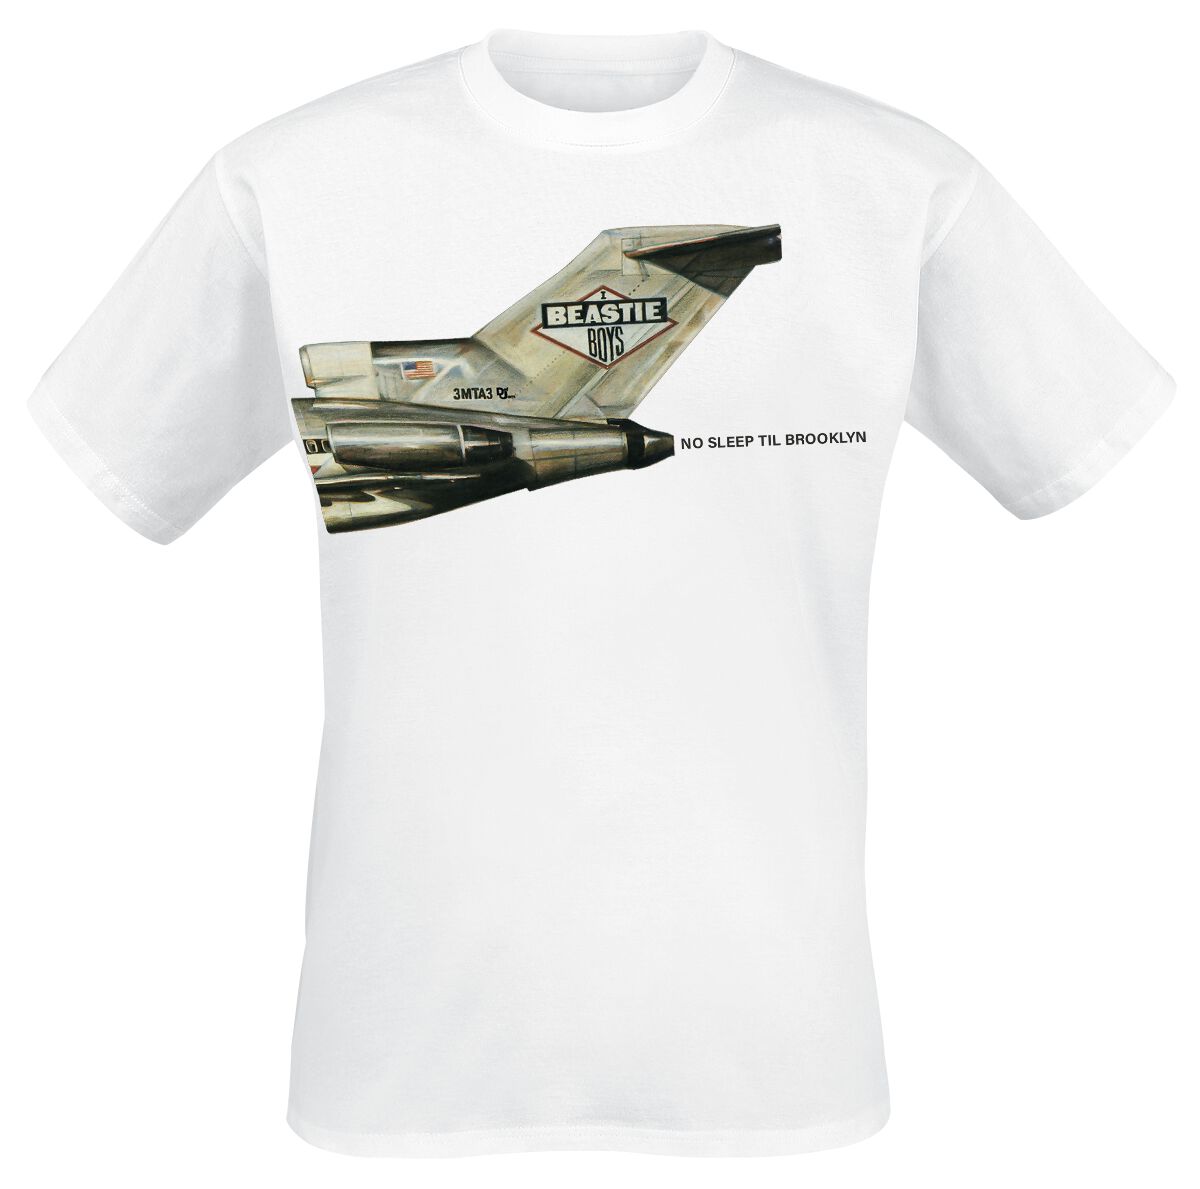 Beastie Boys T-Shirt - No Sleep Til Brooklyn Plane - S bis 3XL - für Männer - Größe XL - weiß  - Lizenziertes Merchandise!